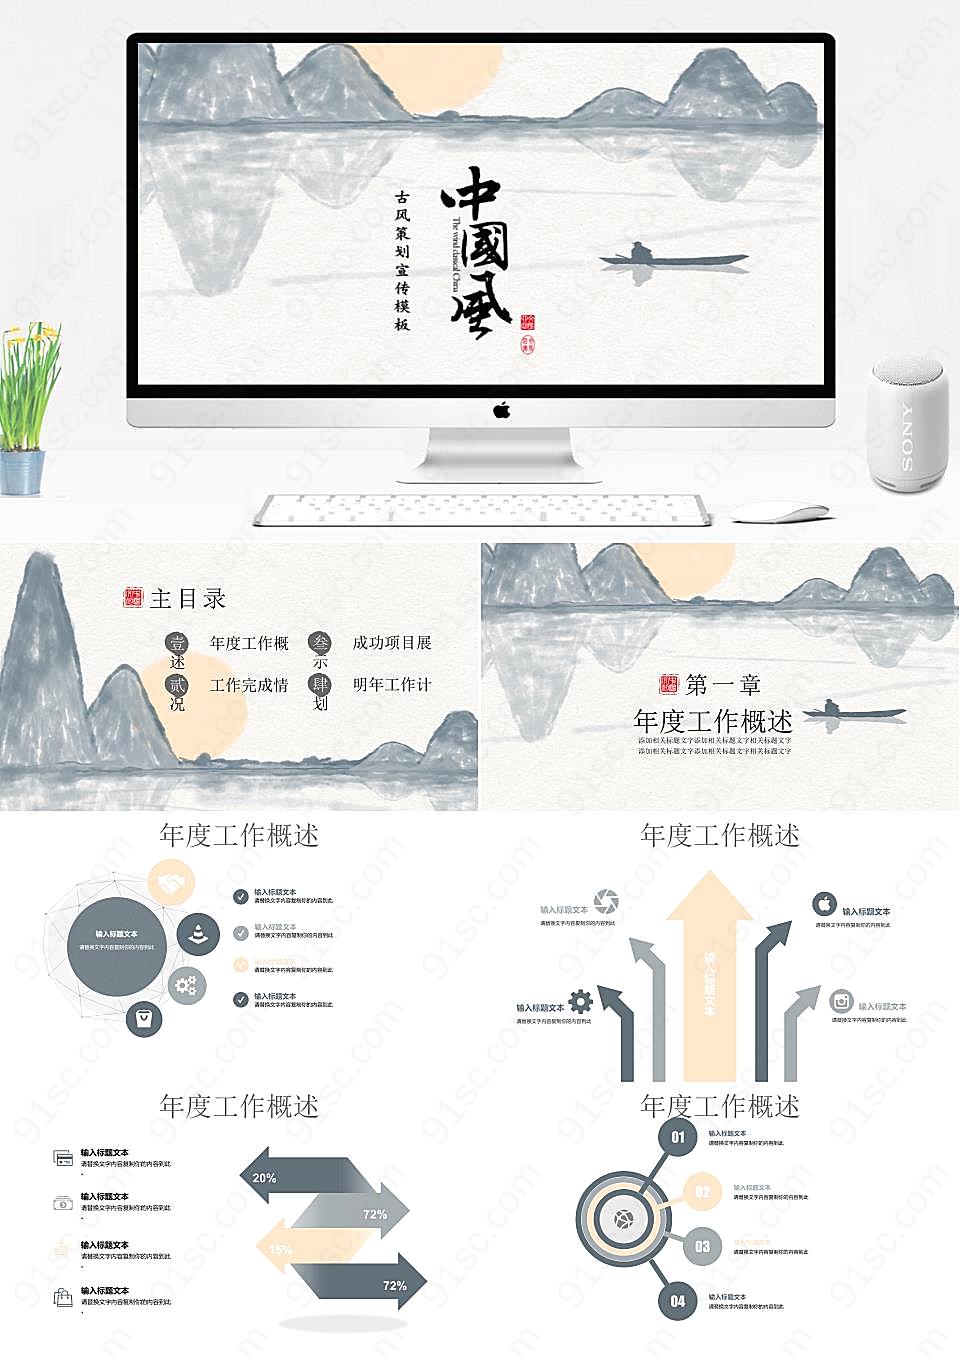 中国古典风情活动策划及宣传通用演示文稿模板营销宣传PPT模板下载